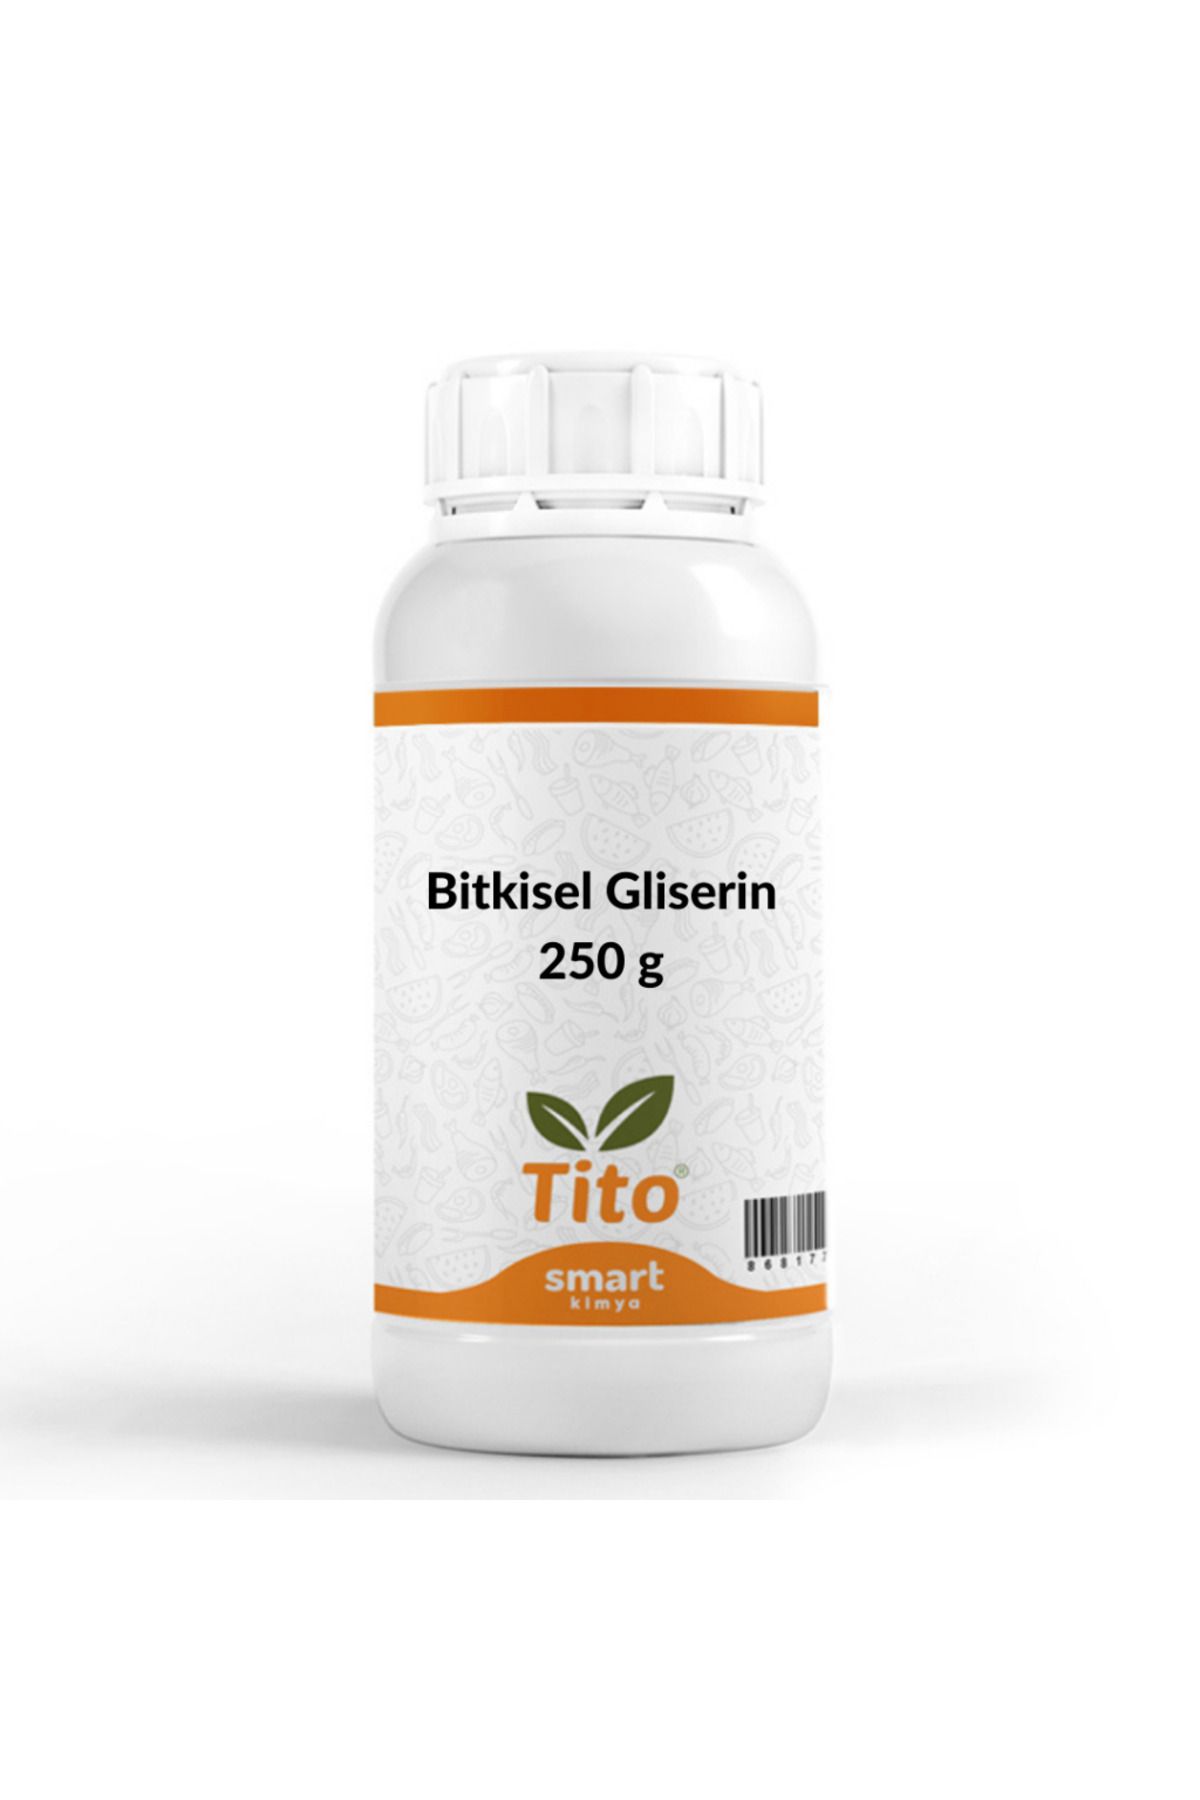 tito Bitkisel Gliserin Vg (vegetable Glycerin) E422 250 G